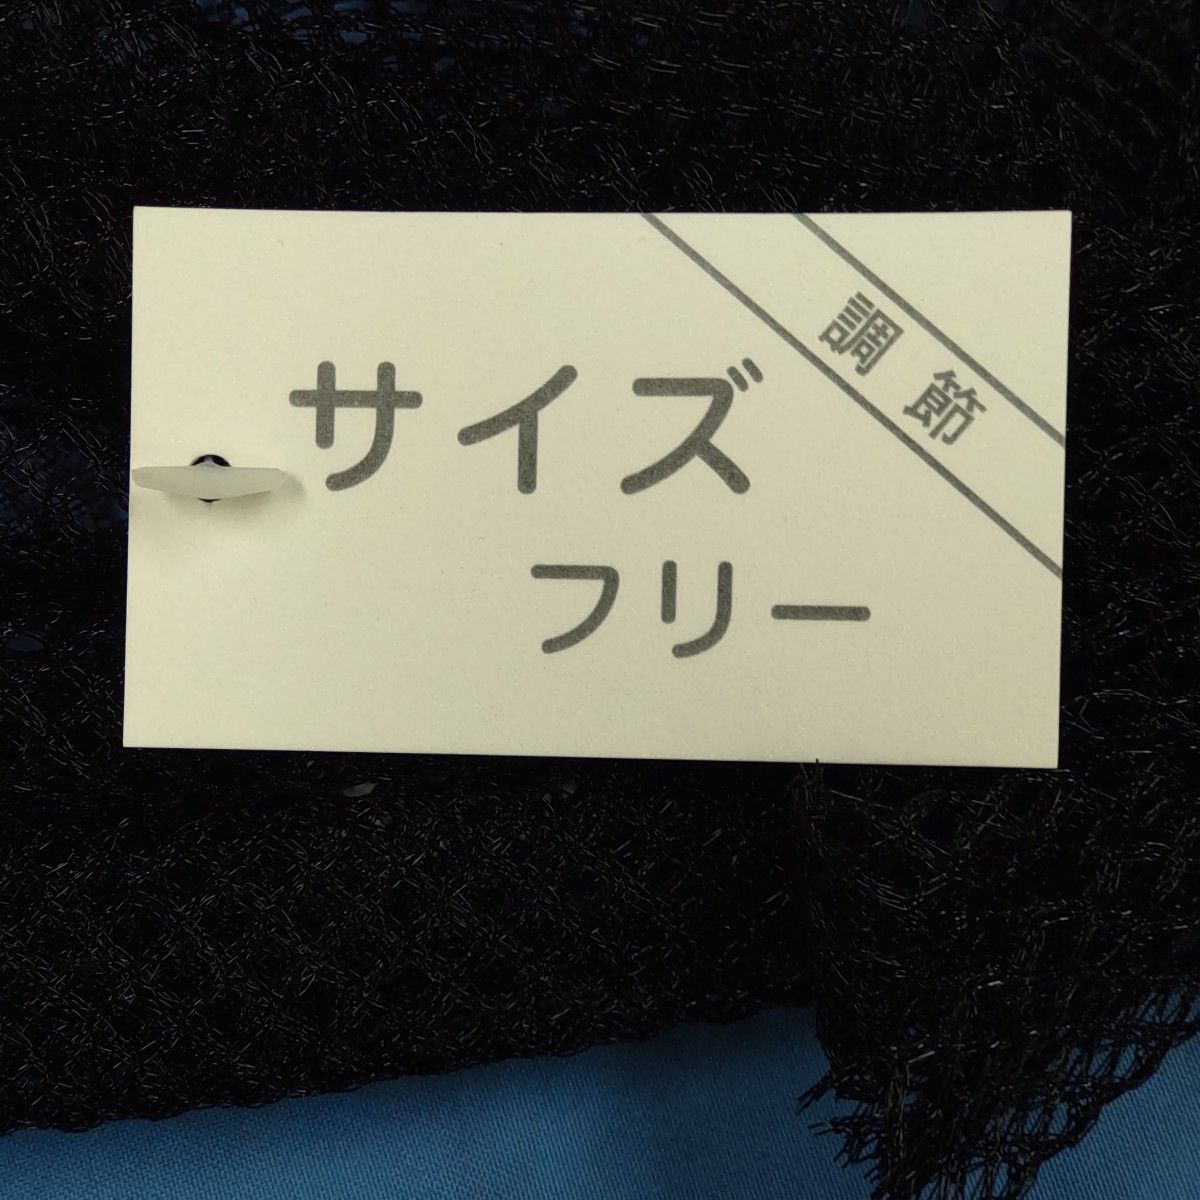 ターバン 帽子 (黒色) メッシュ  フリーサイズ  サイズ調整可能  ☆部屋の中でも被れます。☆信頼の日本製です。【匿名配送】